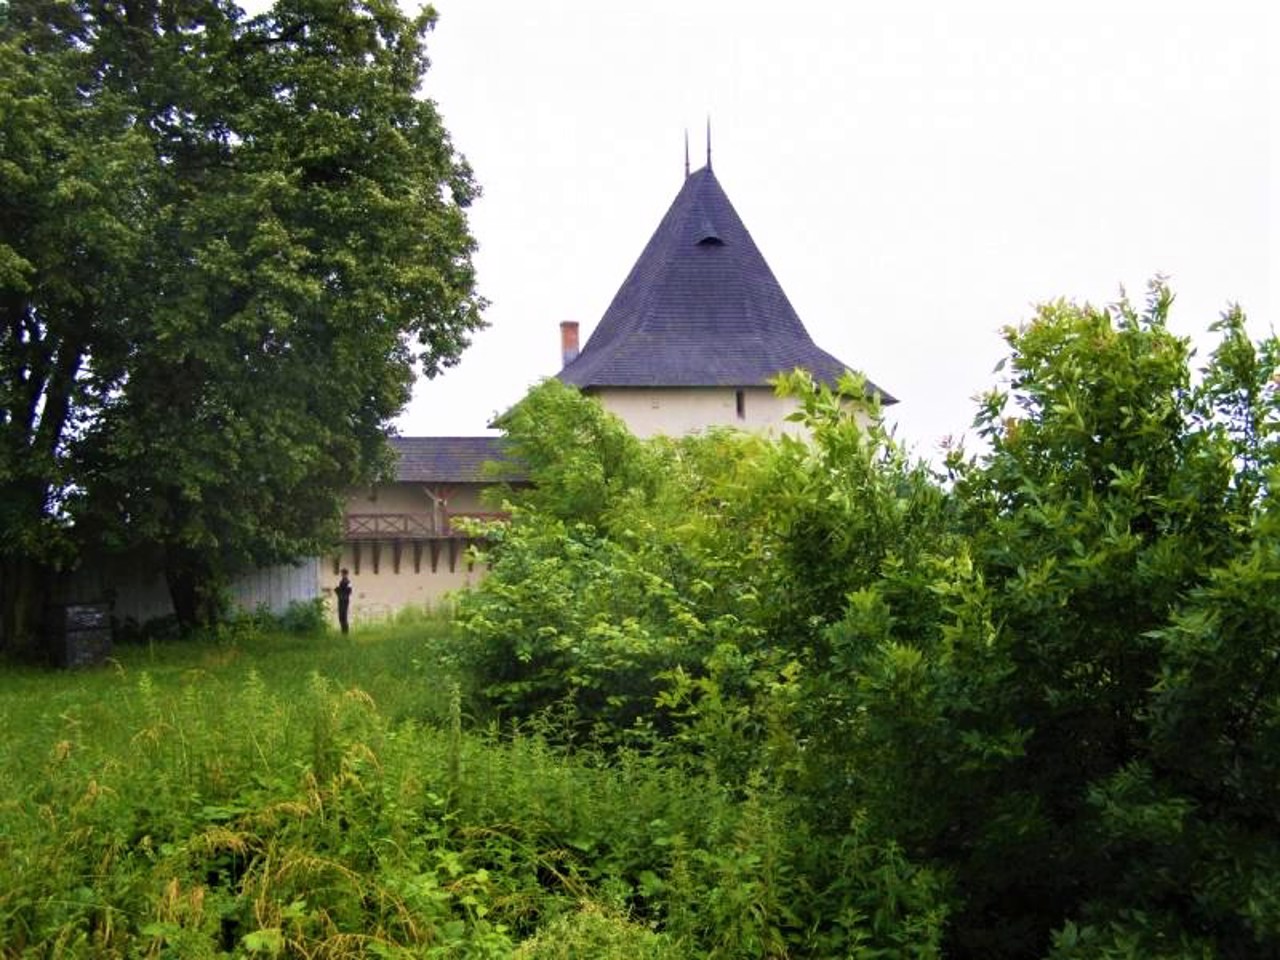 Галичский замок (Старостинский), Галич